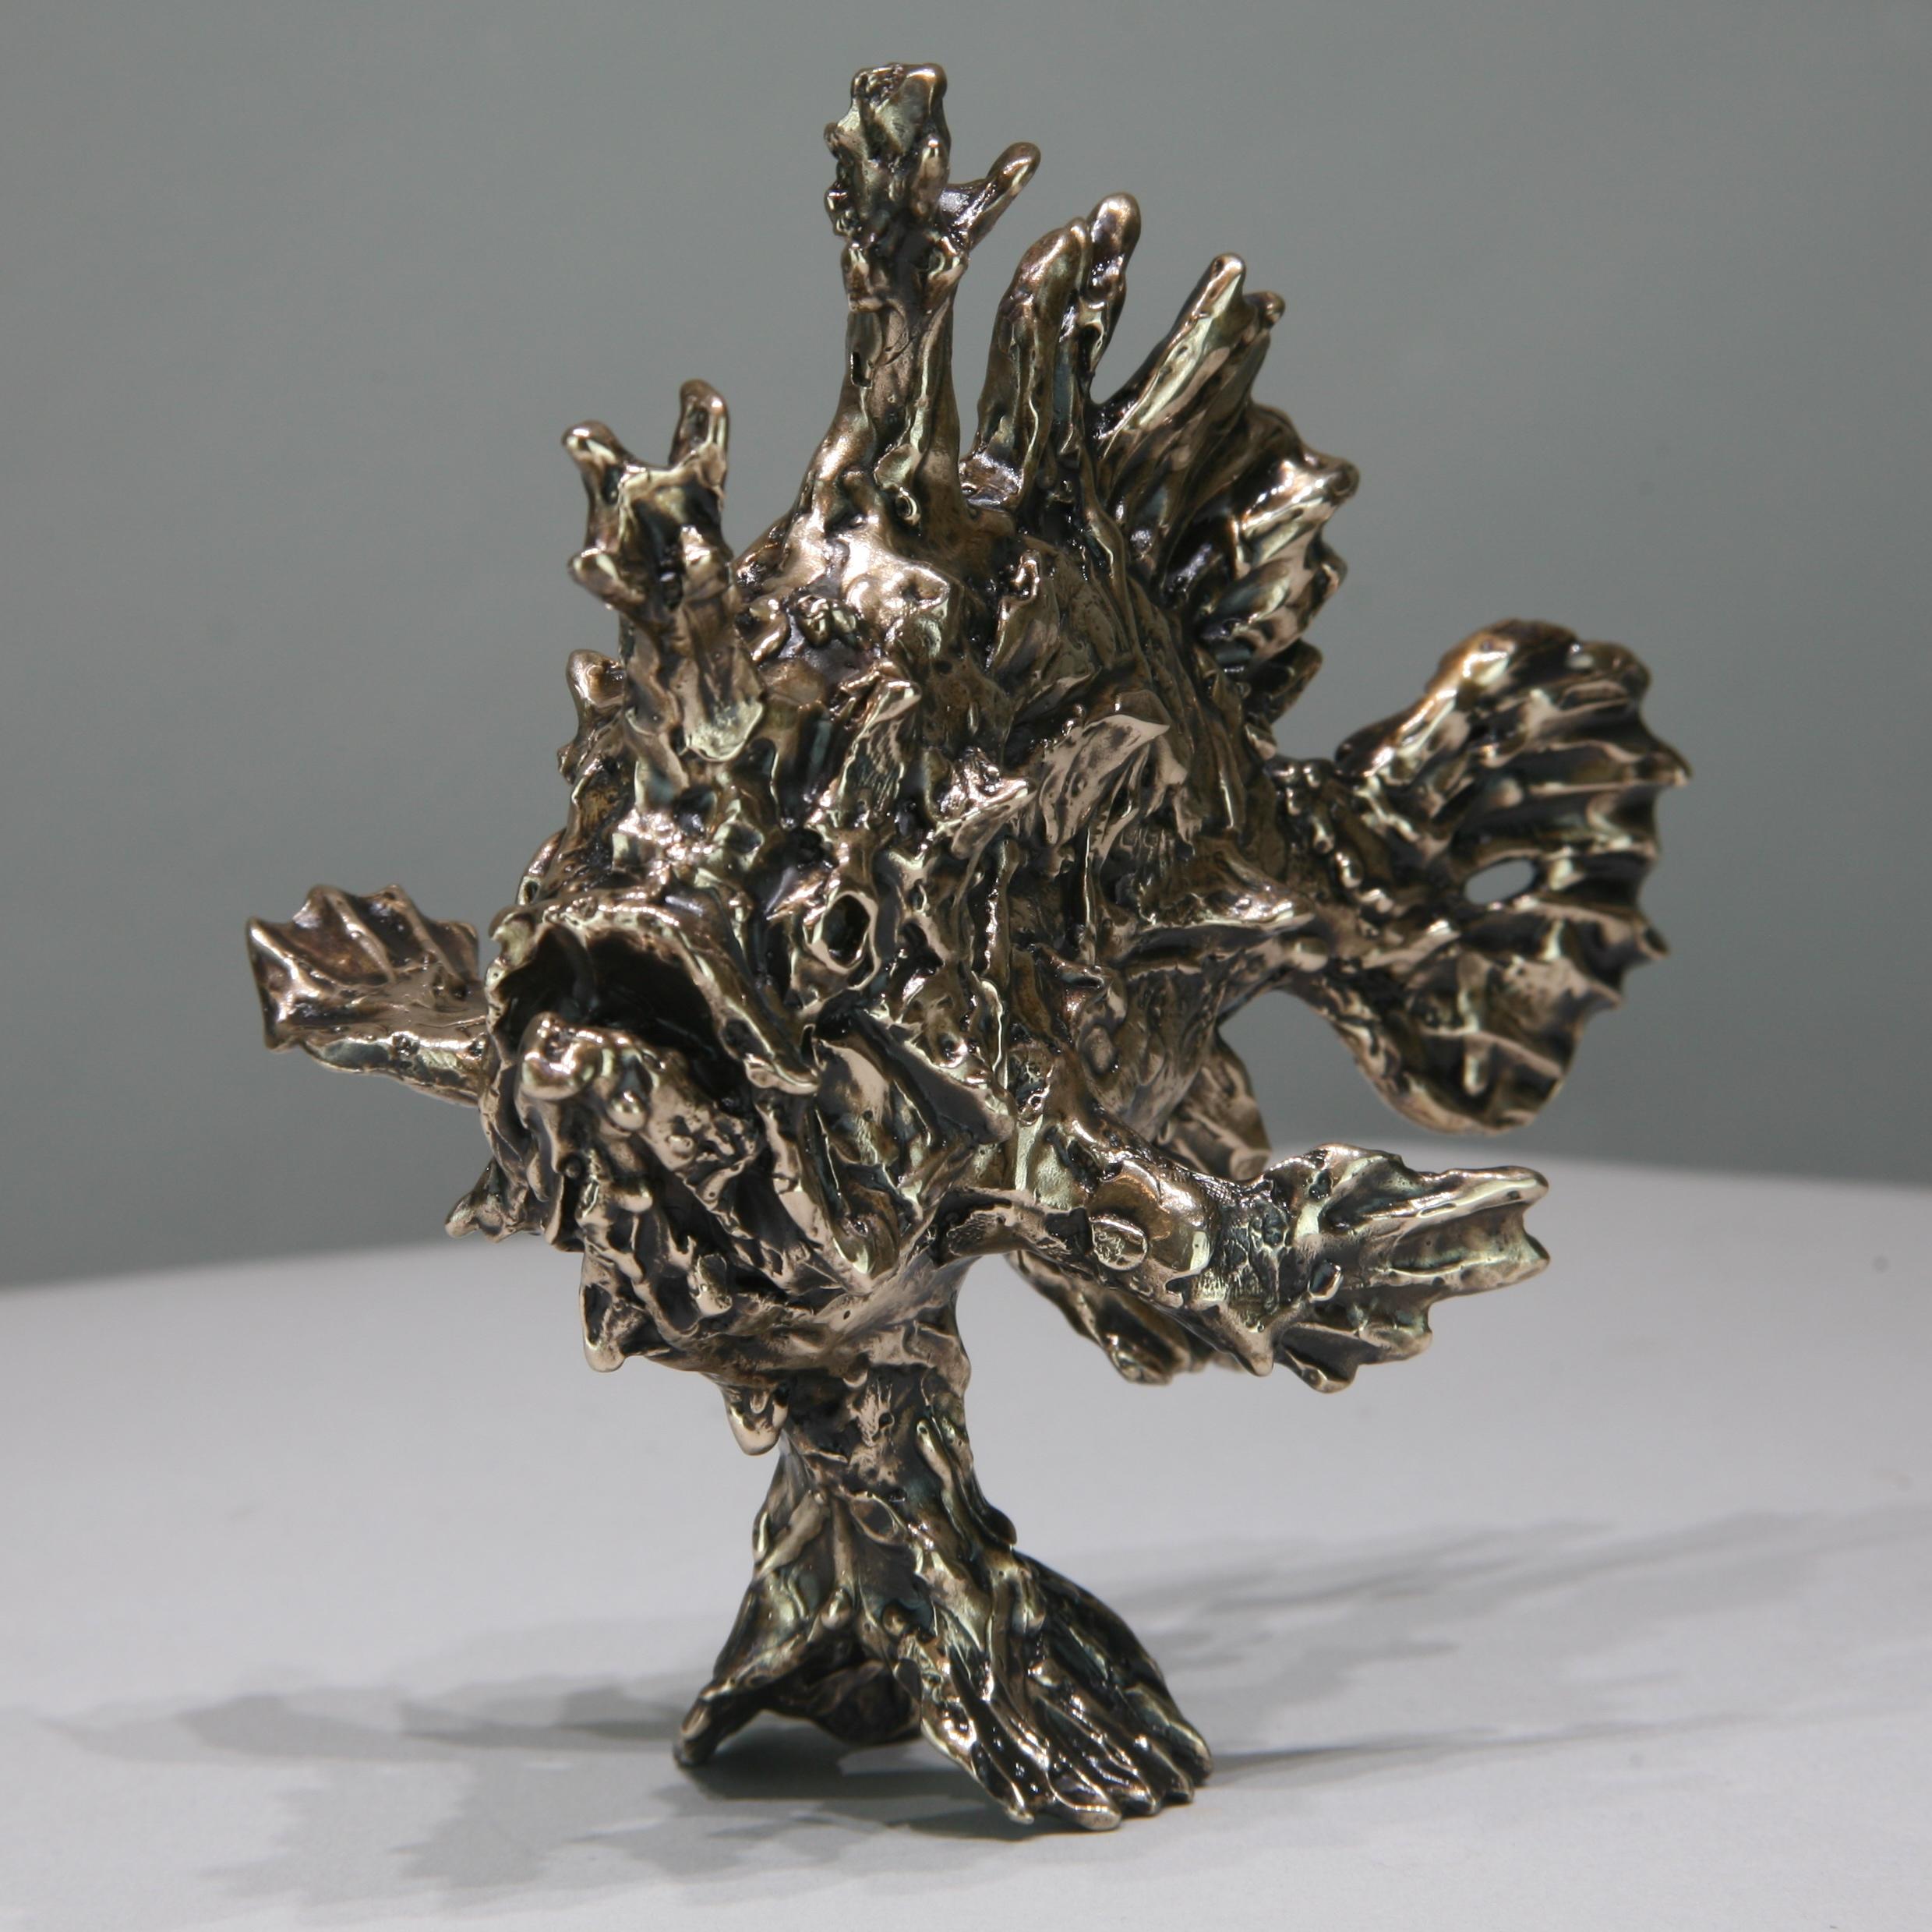 Sargassum-Fisch-Original-Bronze-Wildtier-Skulptur-Kunstwerk-Gegenwartskunst (Abstrakter Impressionismus), Sculpture, von Andrzej Szymczyk